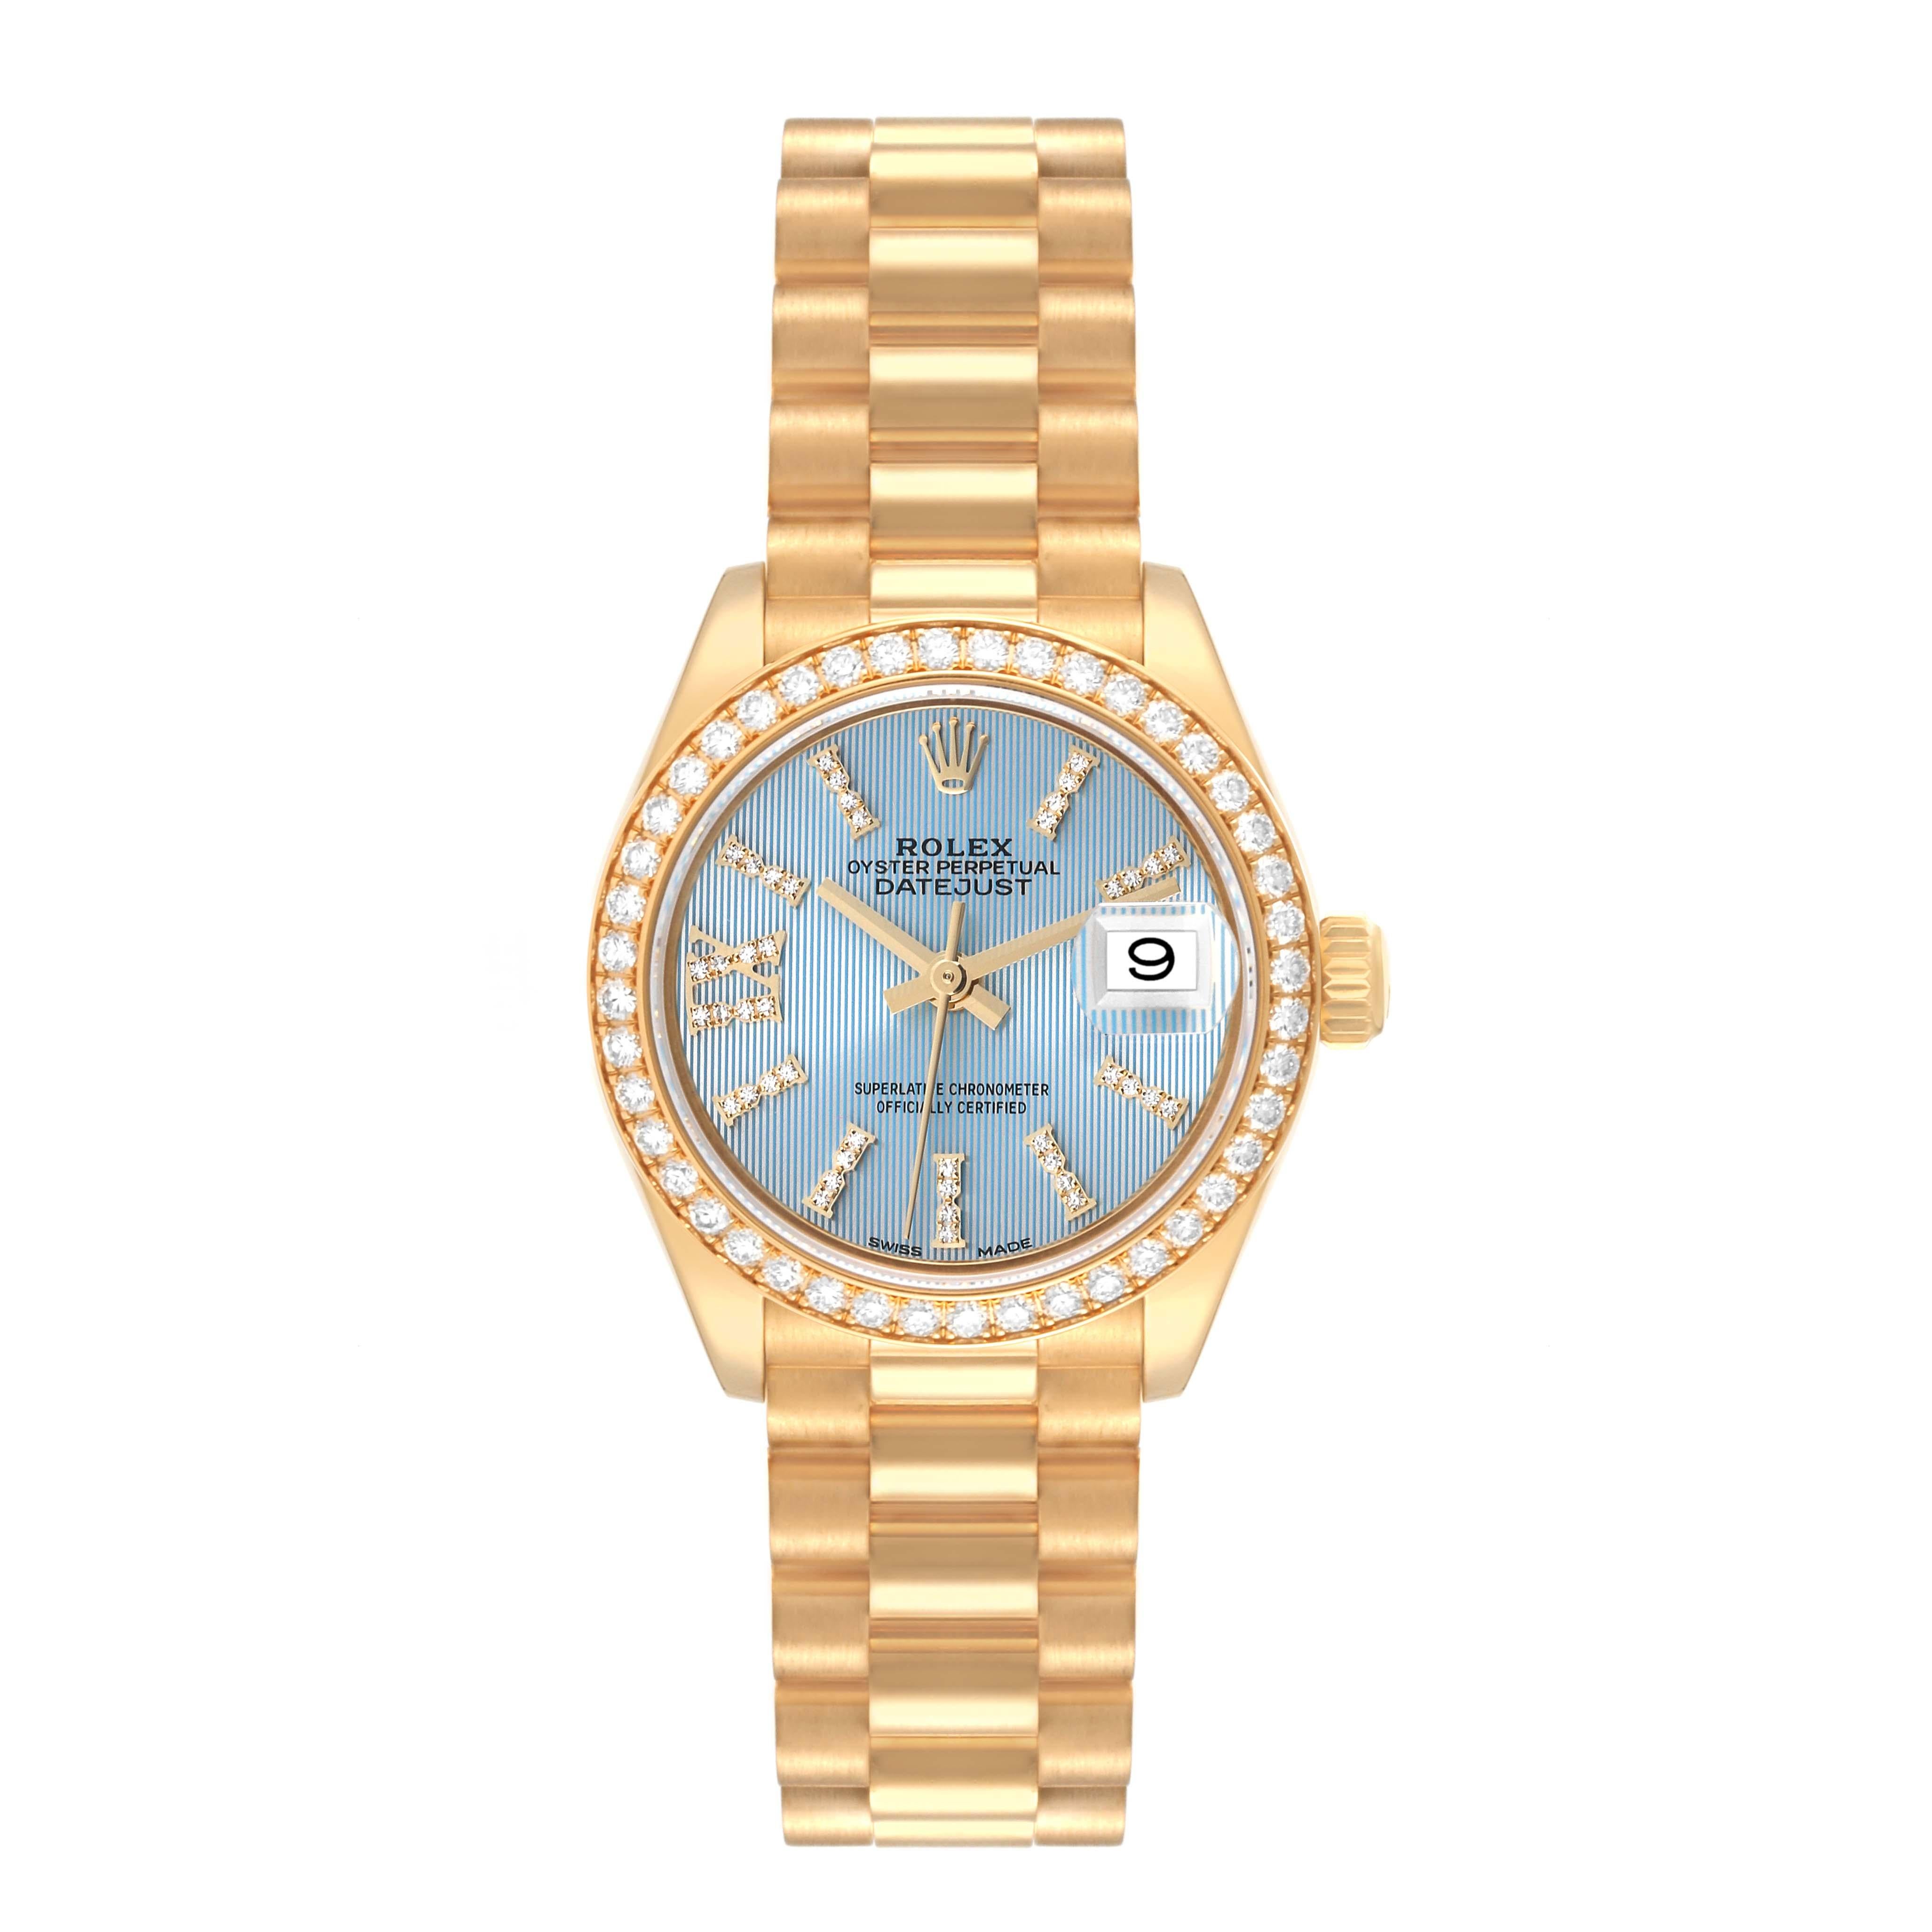 Rolex Datejust President Yellow Gold Diamond Bezel Ladies Watch 279138. Mouvement à remontage automatique, certifié chronomètre, avec fonction date à déclenchement rapide. Boîtier en or jaune 18 carats de 28,0 mm de diamètre. Logo Rolex sur la